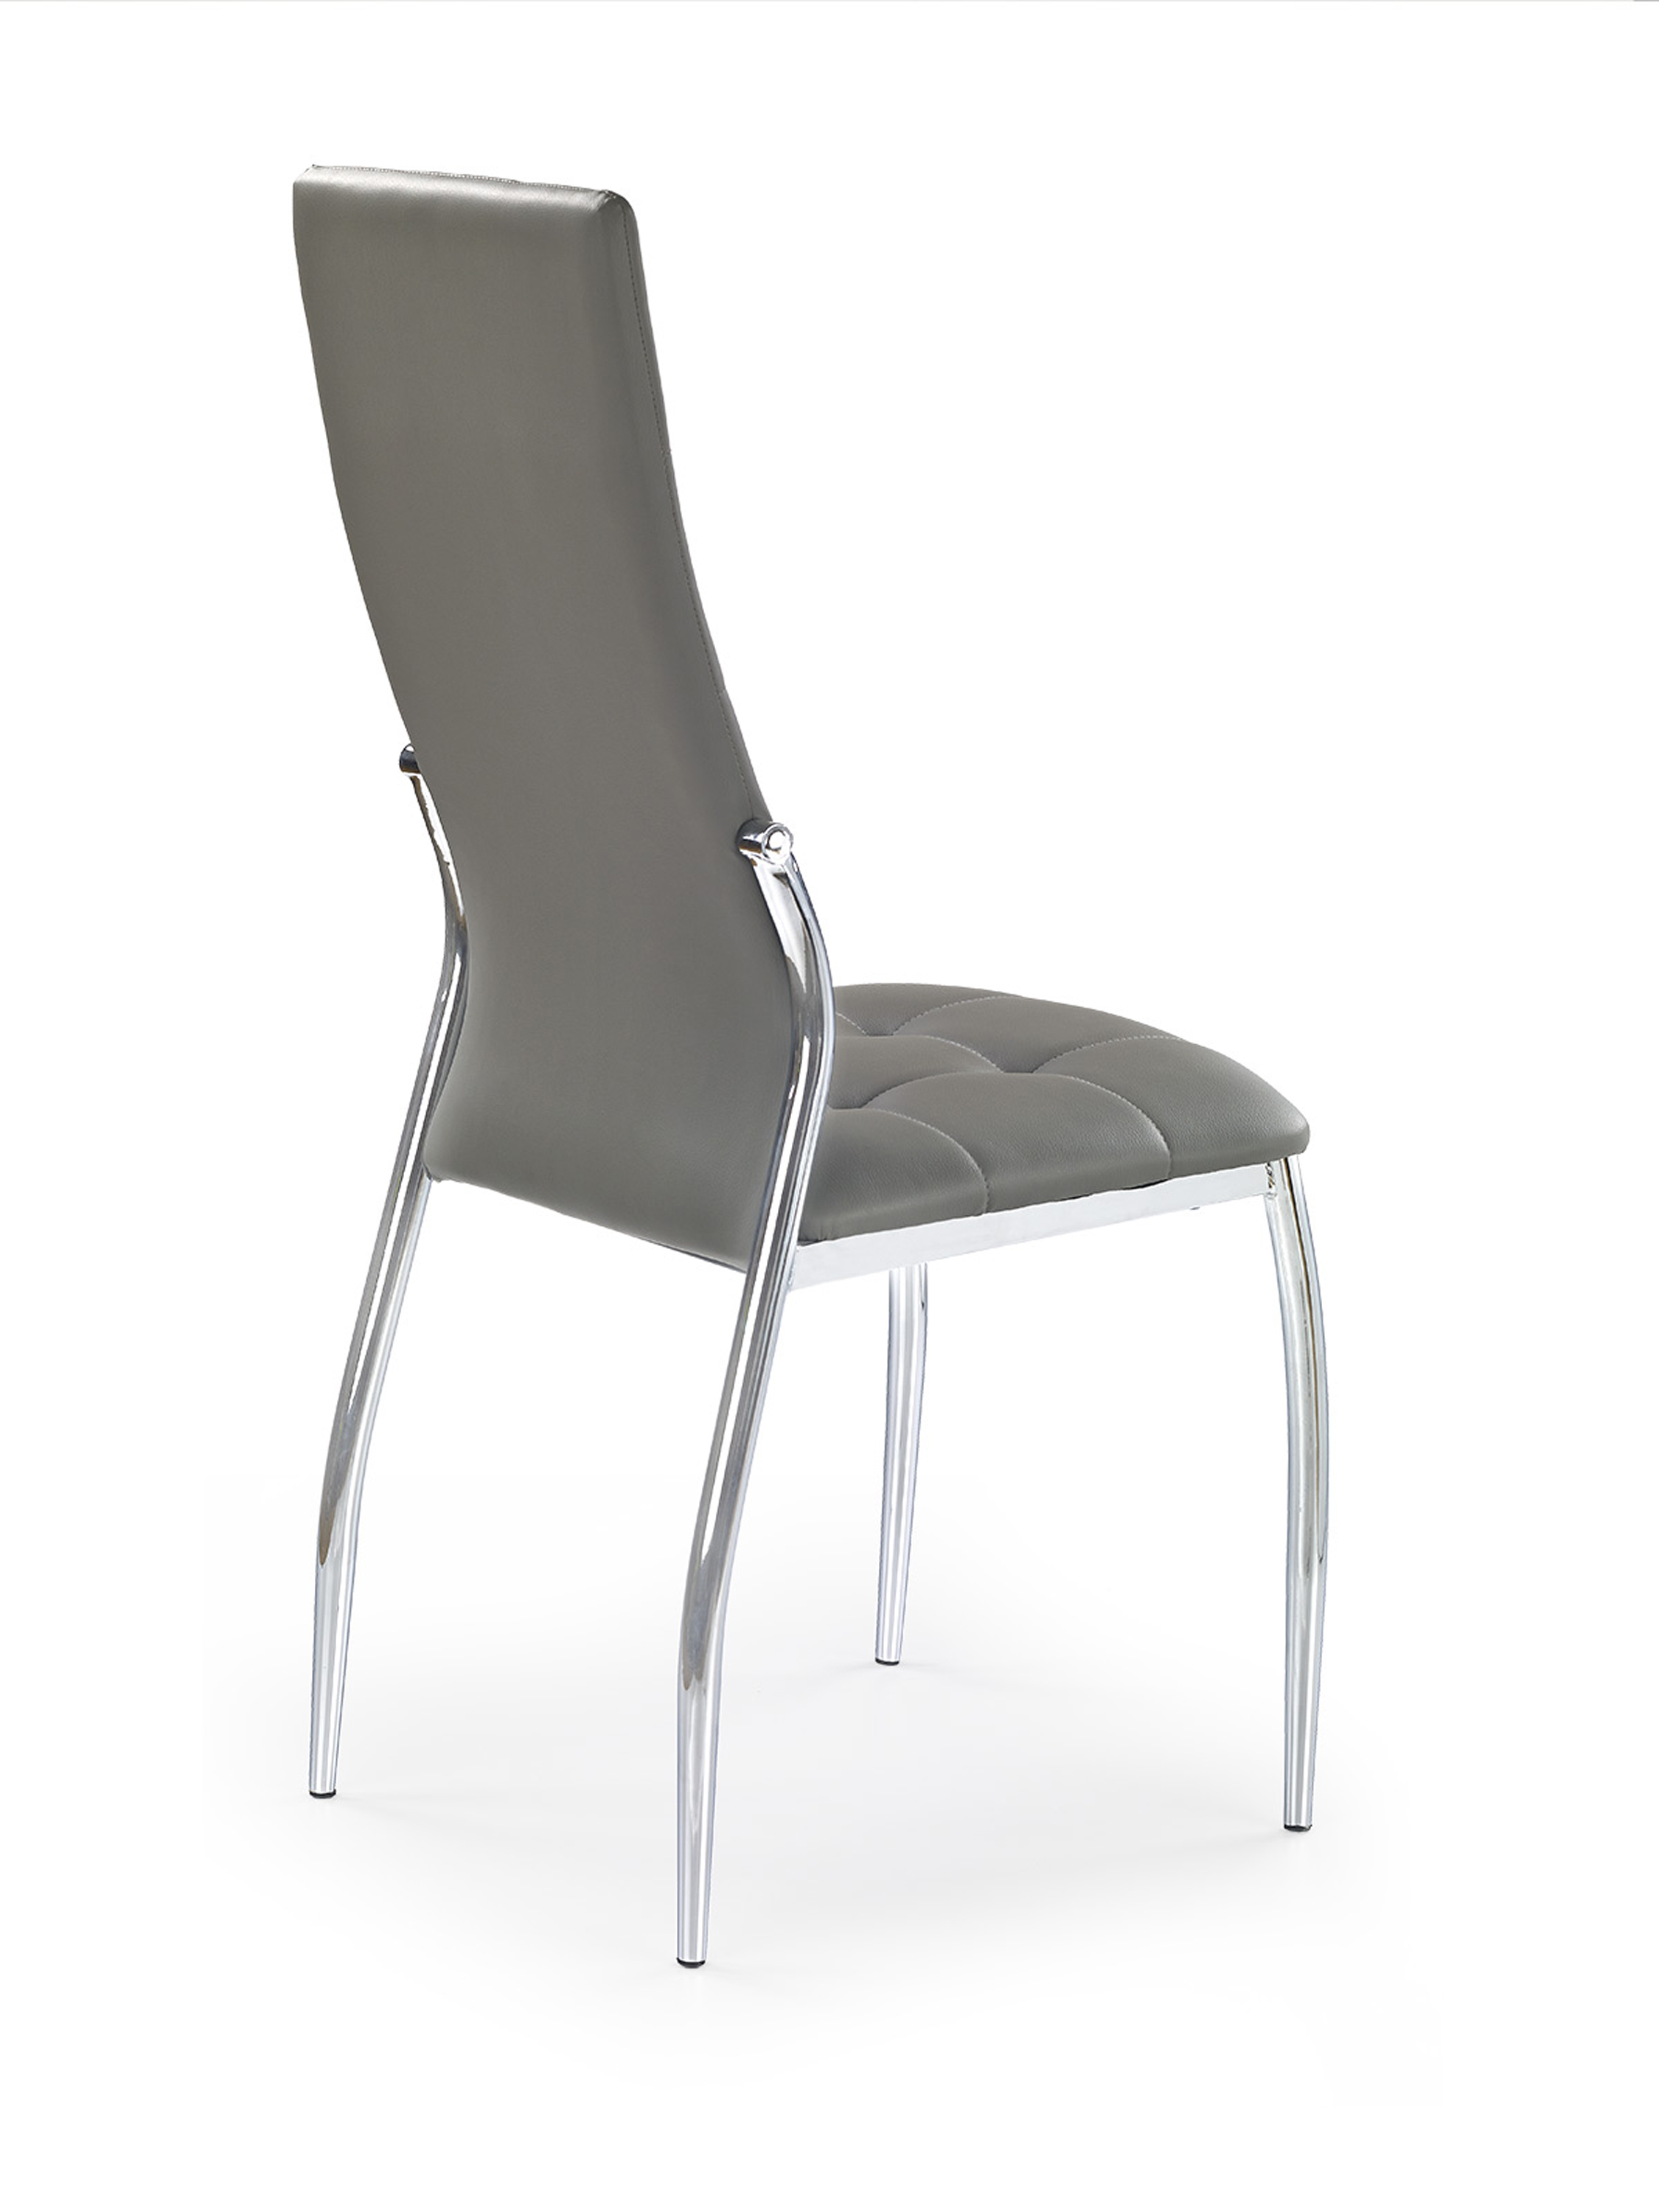 Jídelní židle K209 - popelavá Židle k209 - popel